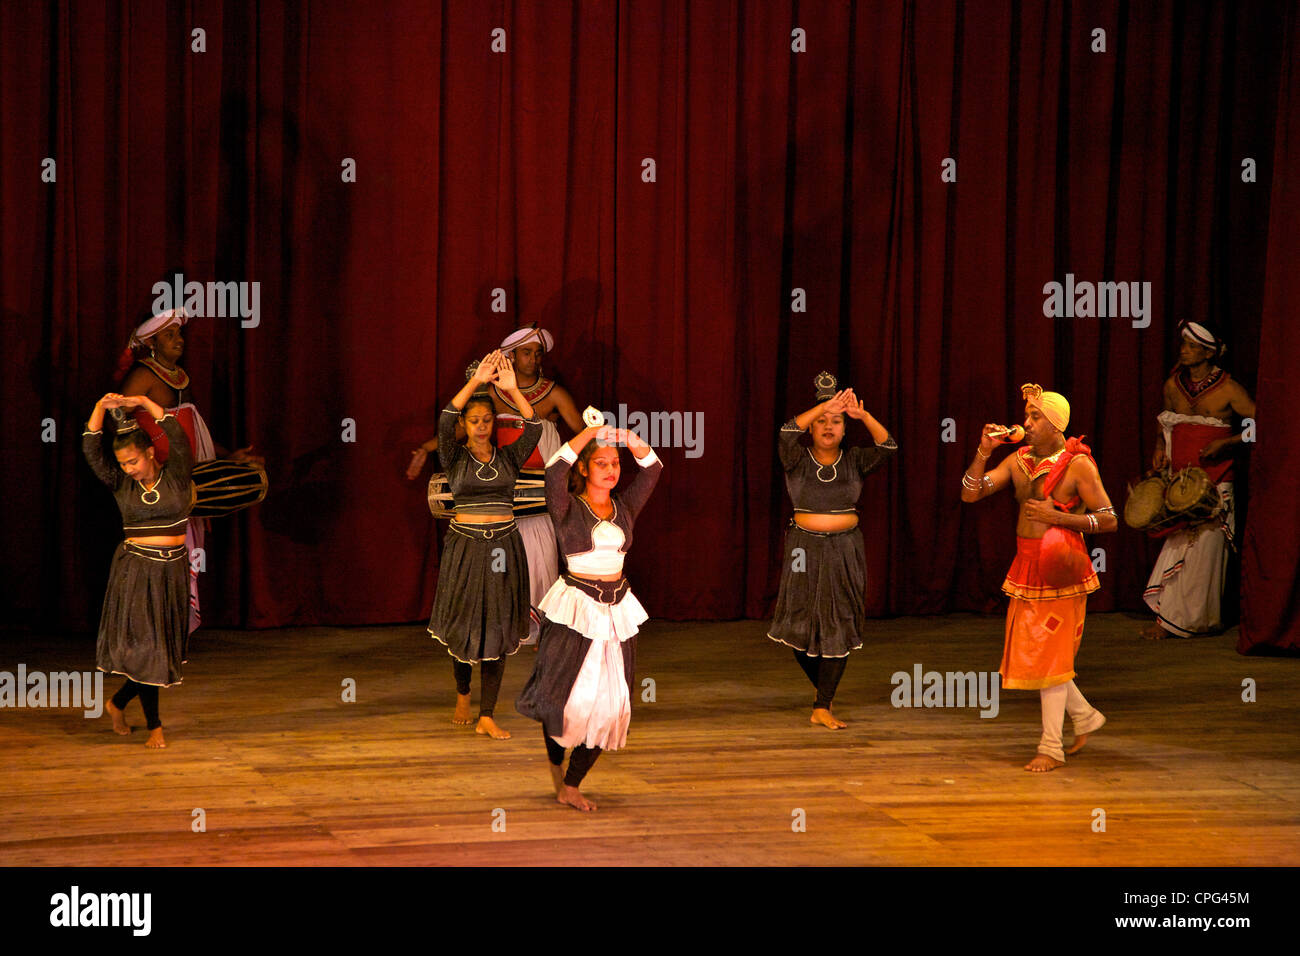 Danseurs et musiciens traditionnels, spectacle culturel, Kandy, Sri Lanka, Asie Banque D'Images